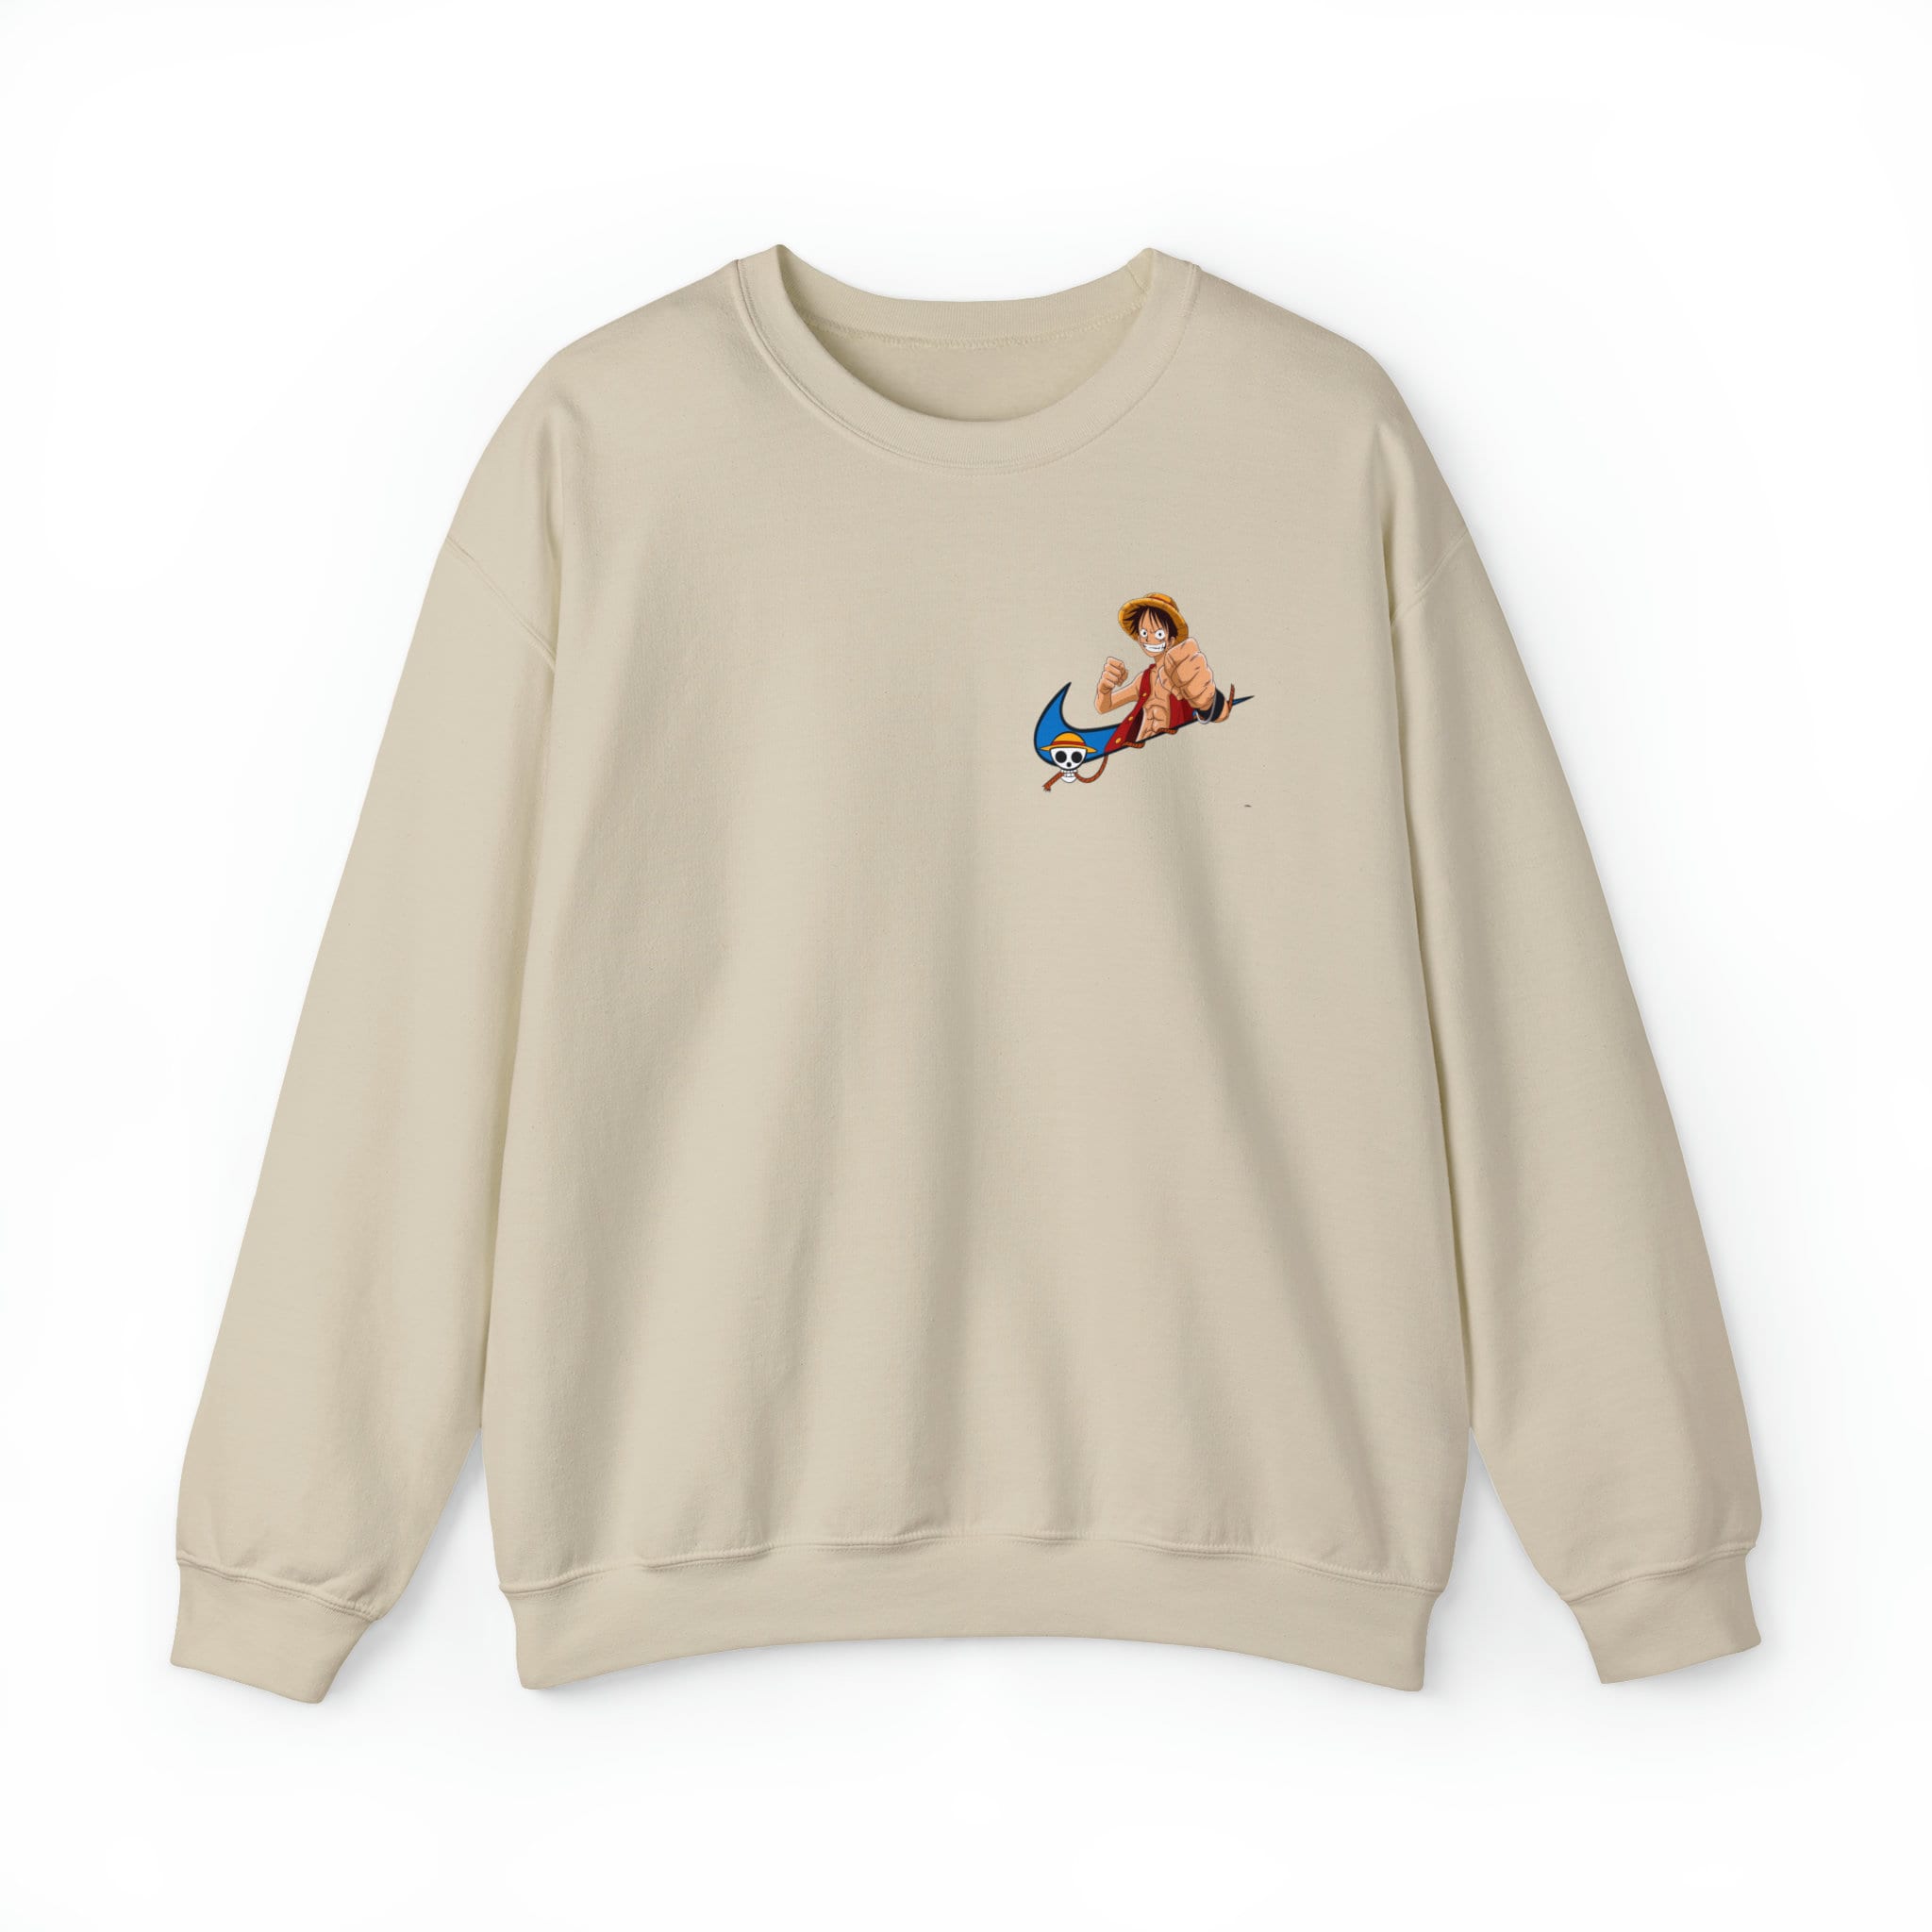 One Piece Shirt Sweatshirt Hoodie Unisex Embroidered One Piece